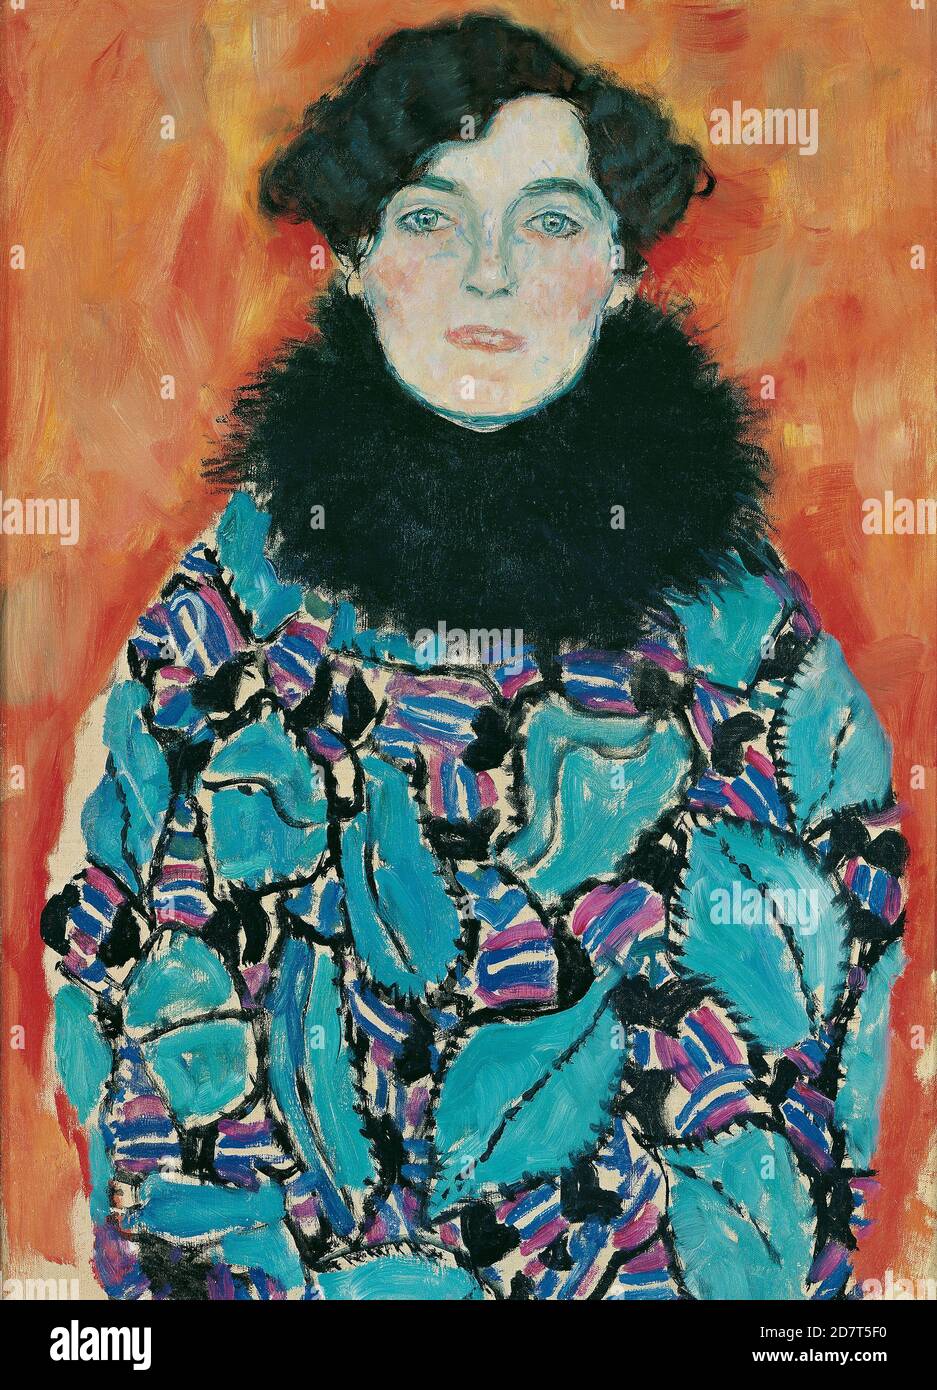 Title: Portrait of Johanna Staude Creator: Gustav Klimt  Date: 1917-18 Medium: Oil on canvas Dimensions: 70 x 50 cm Location: Osterreichische Galerie Belvedere, Vienna Stock Photo